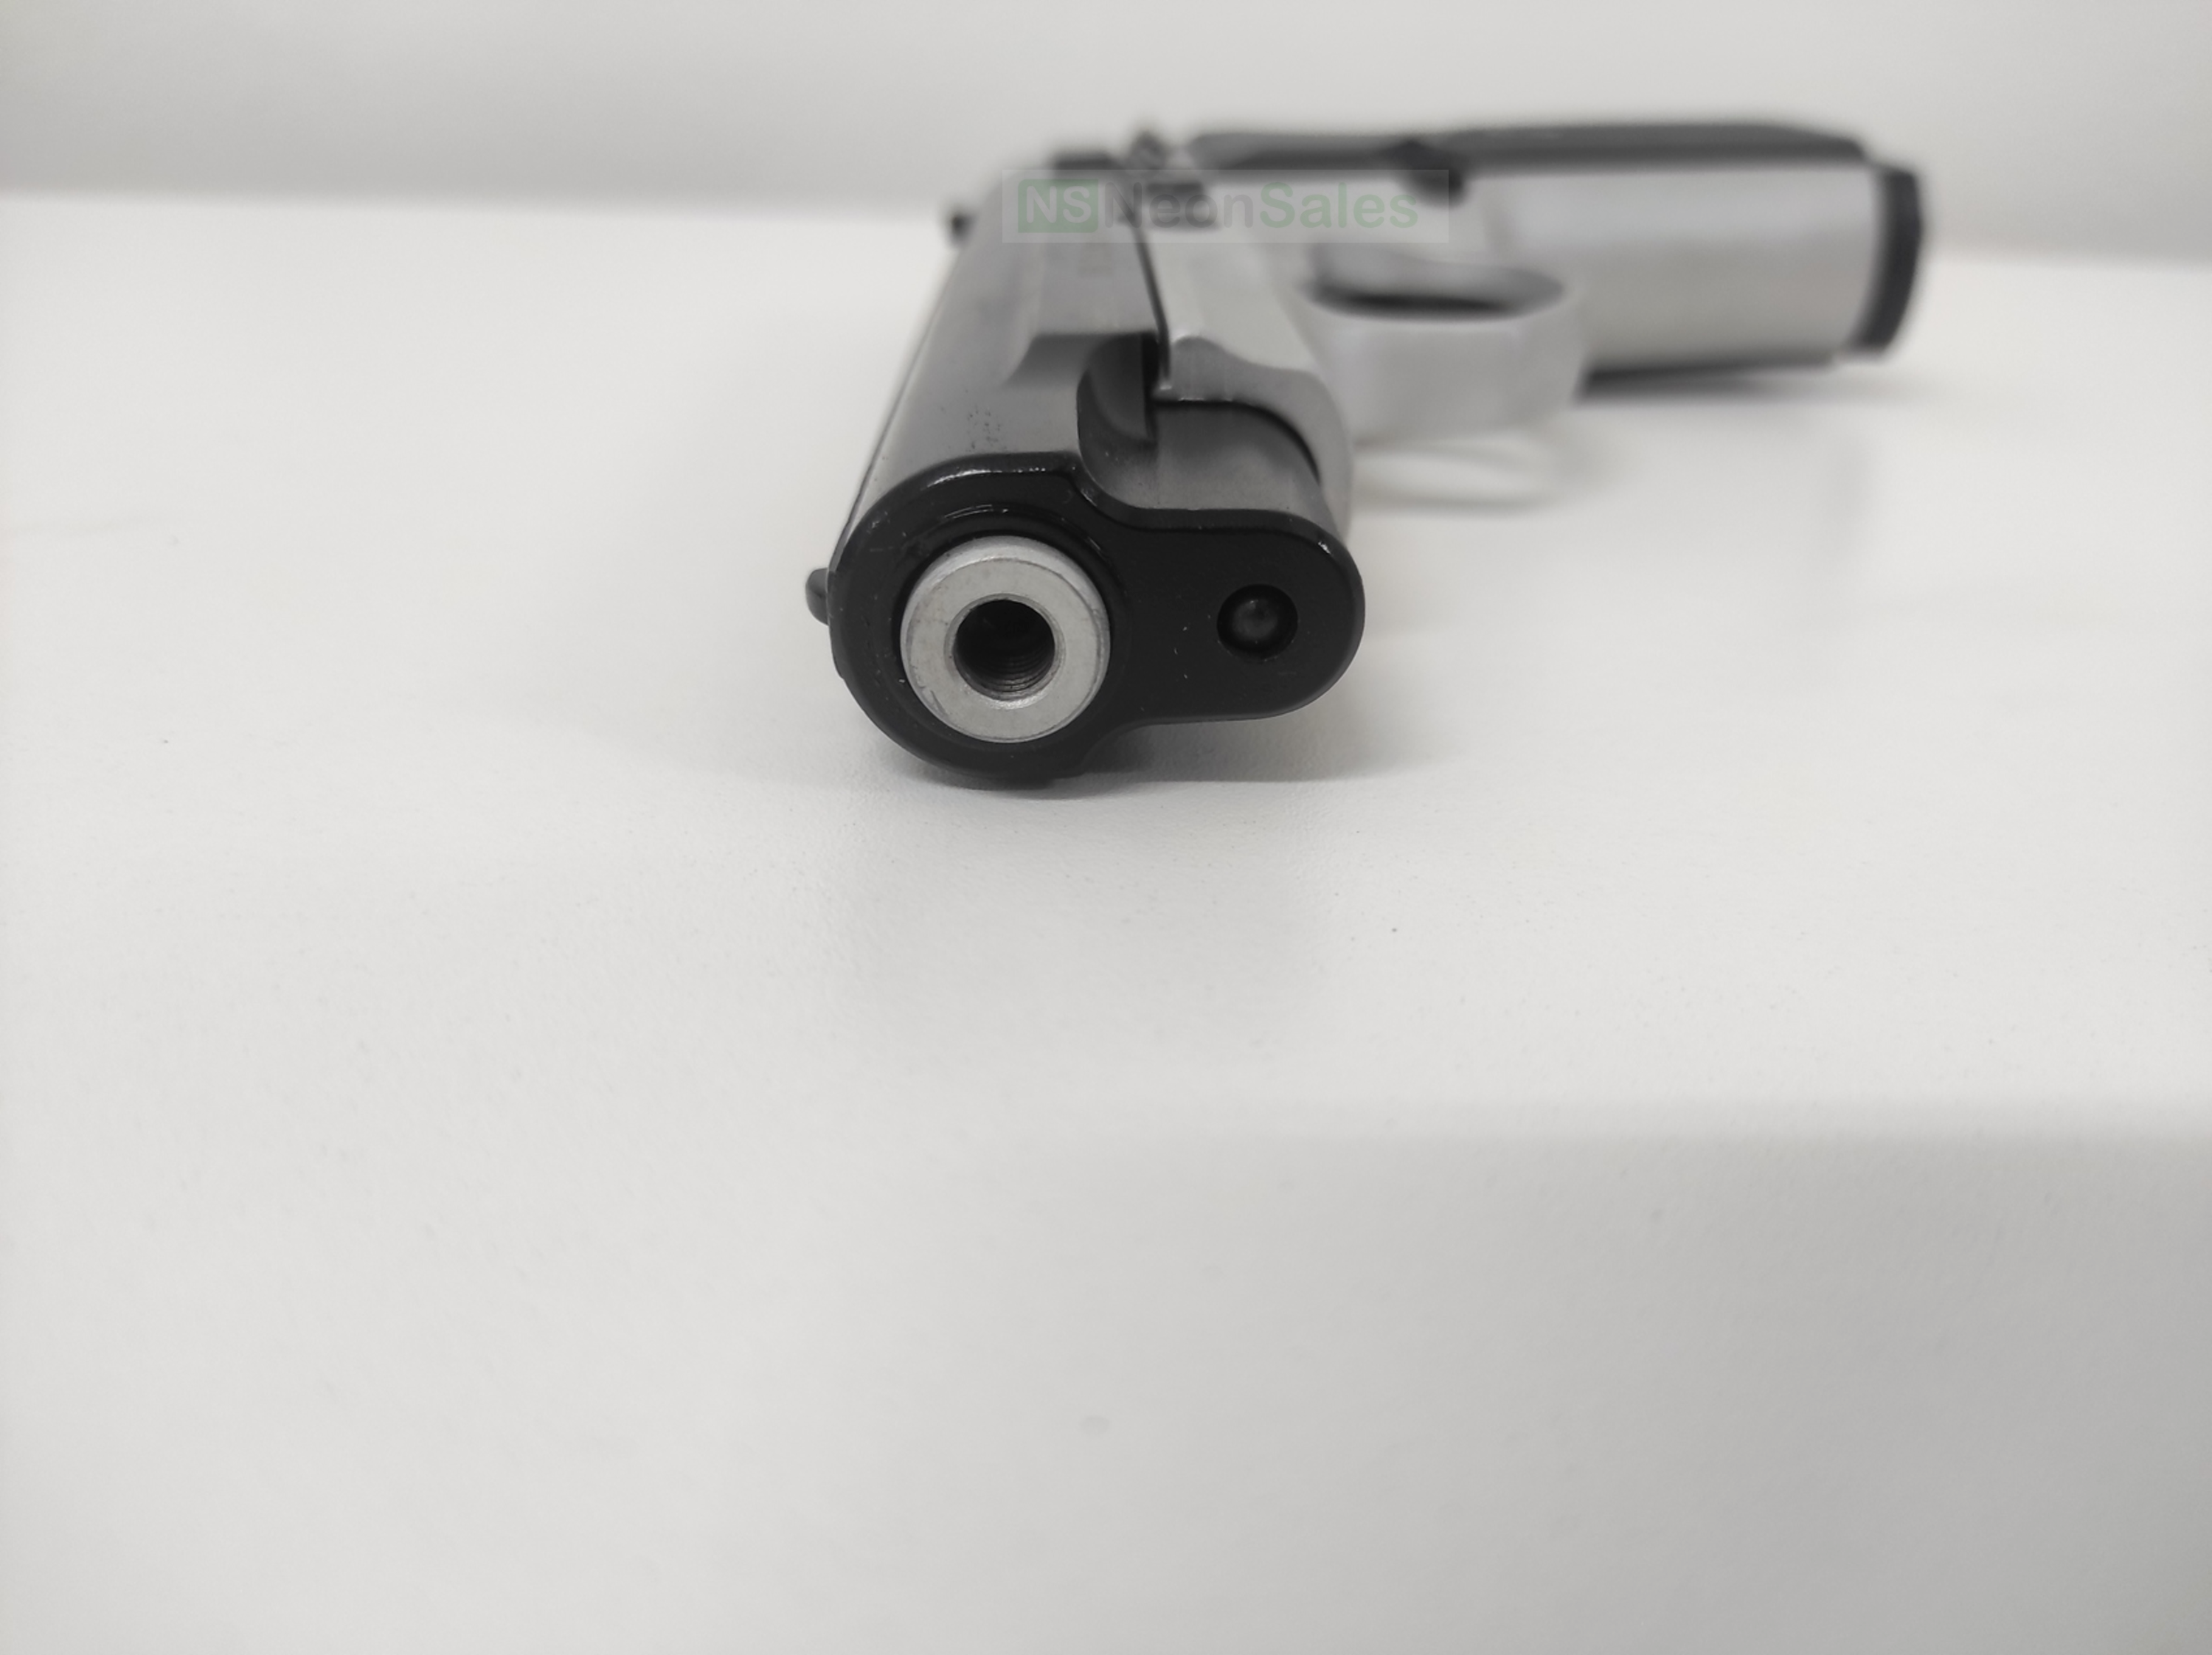 BAREDDA S56 BLANK GUN - BLACK & WHITE